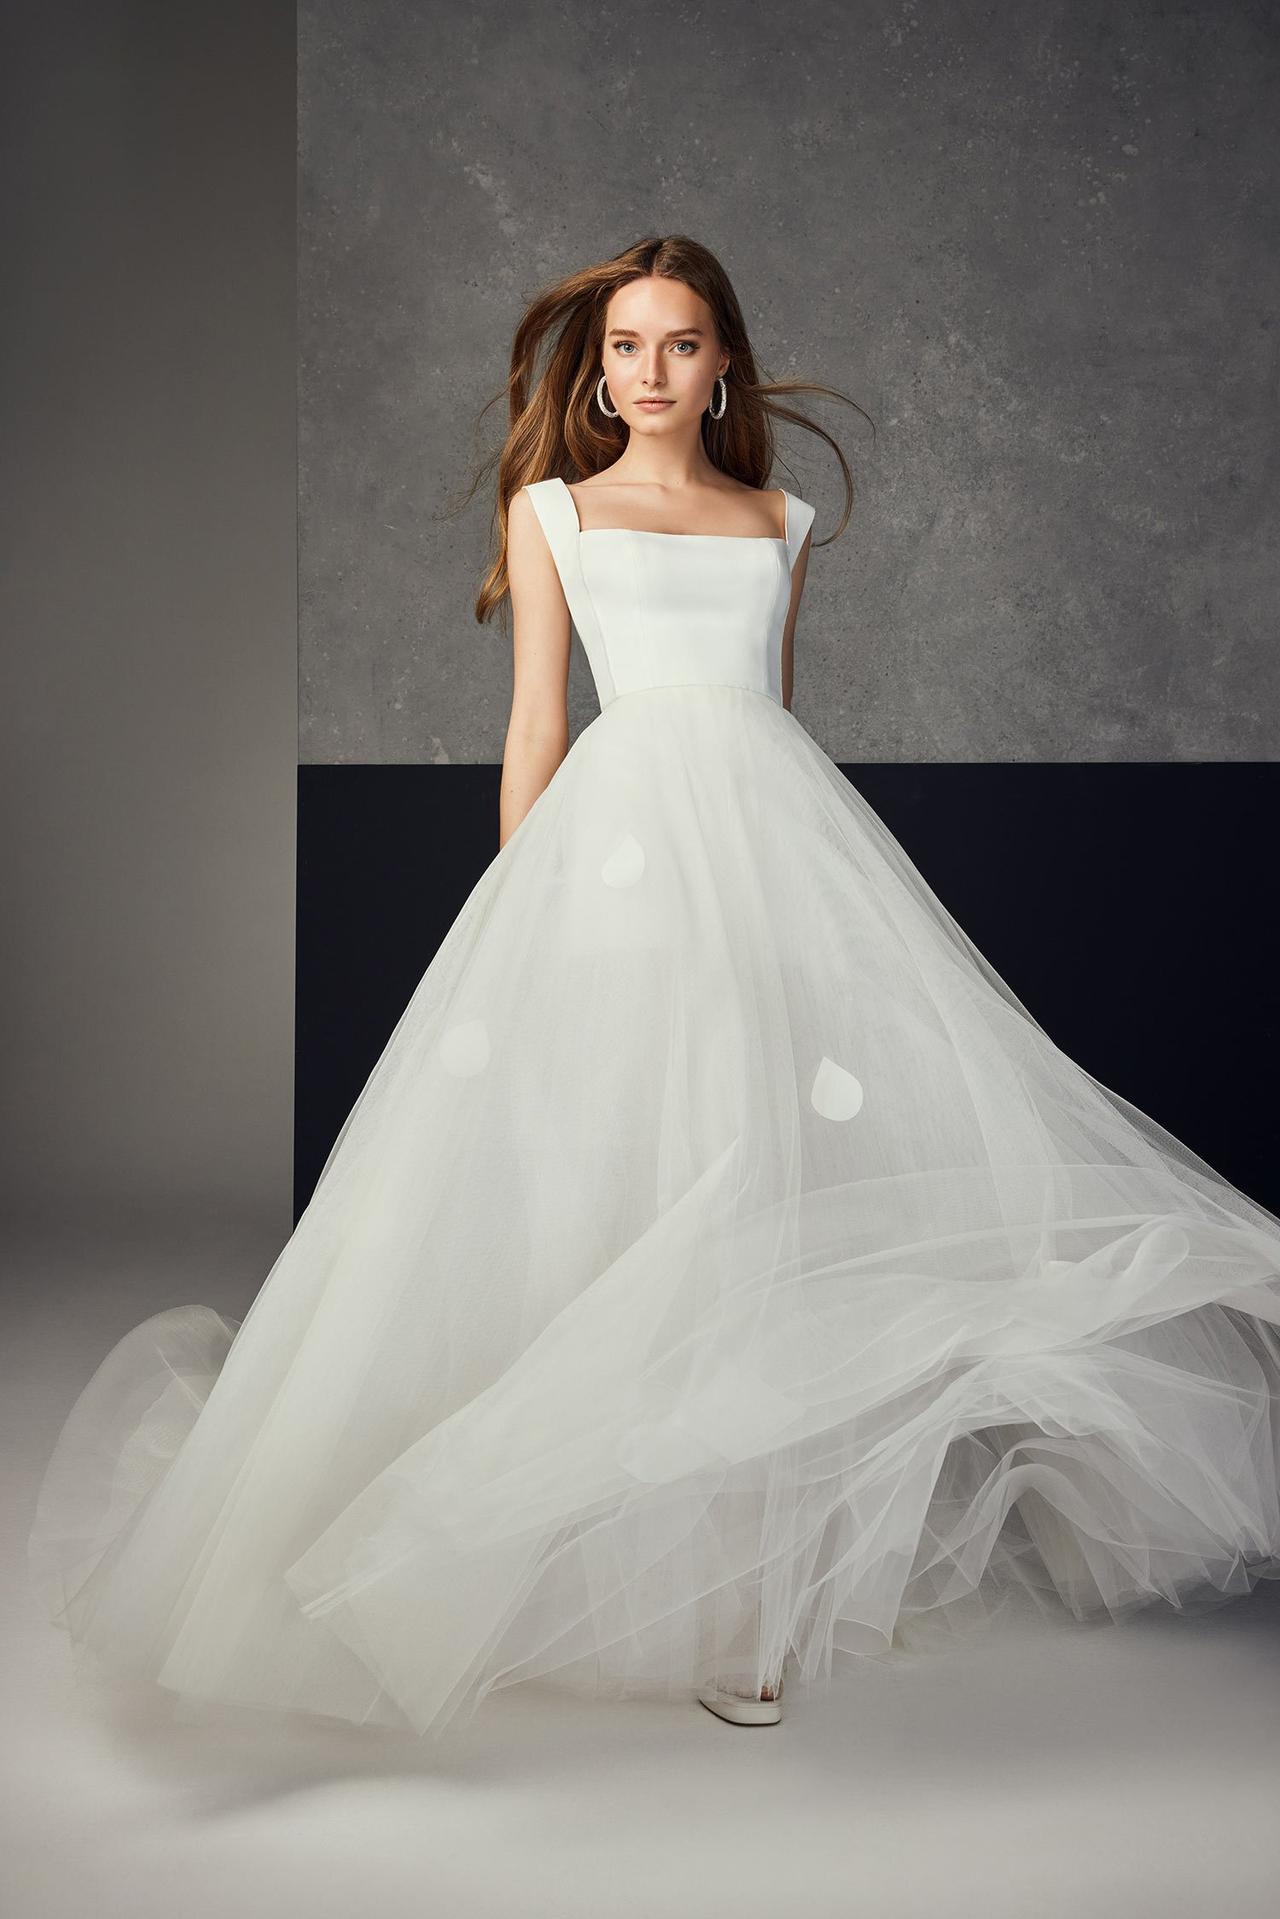 140 vestidos de novia sencillos y elegantes para caminar al altar